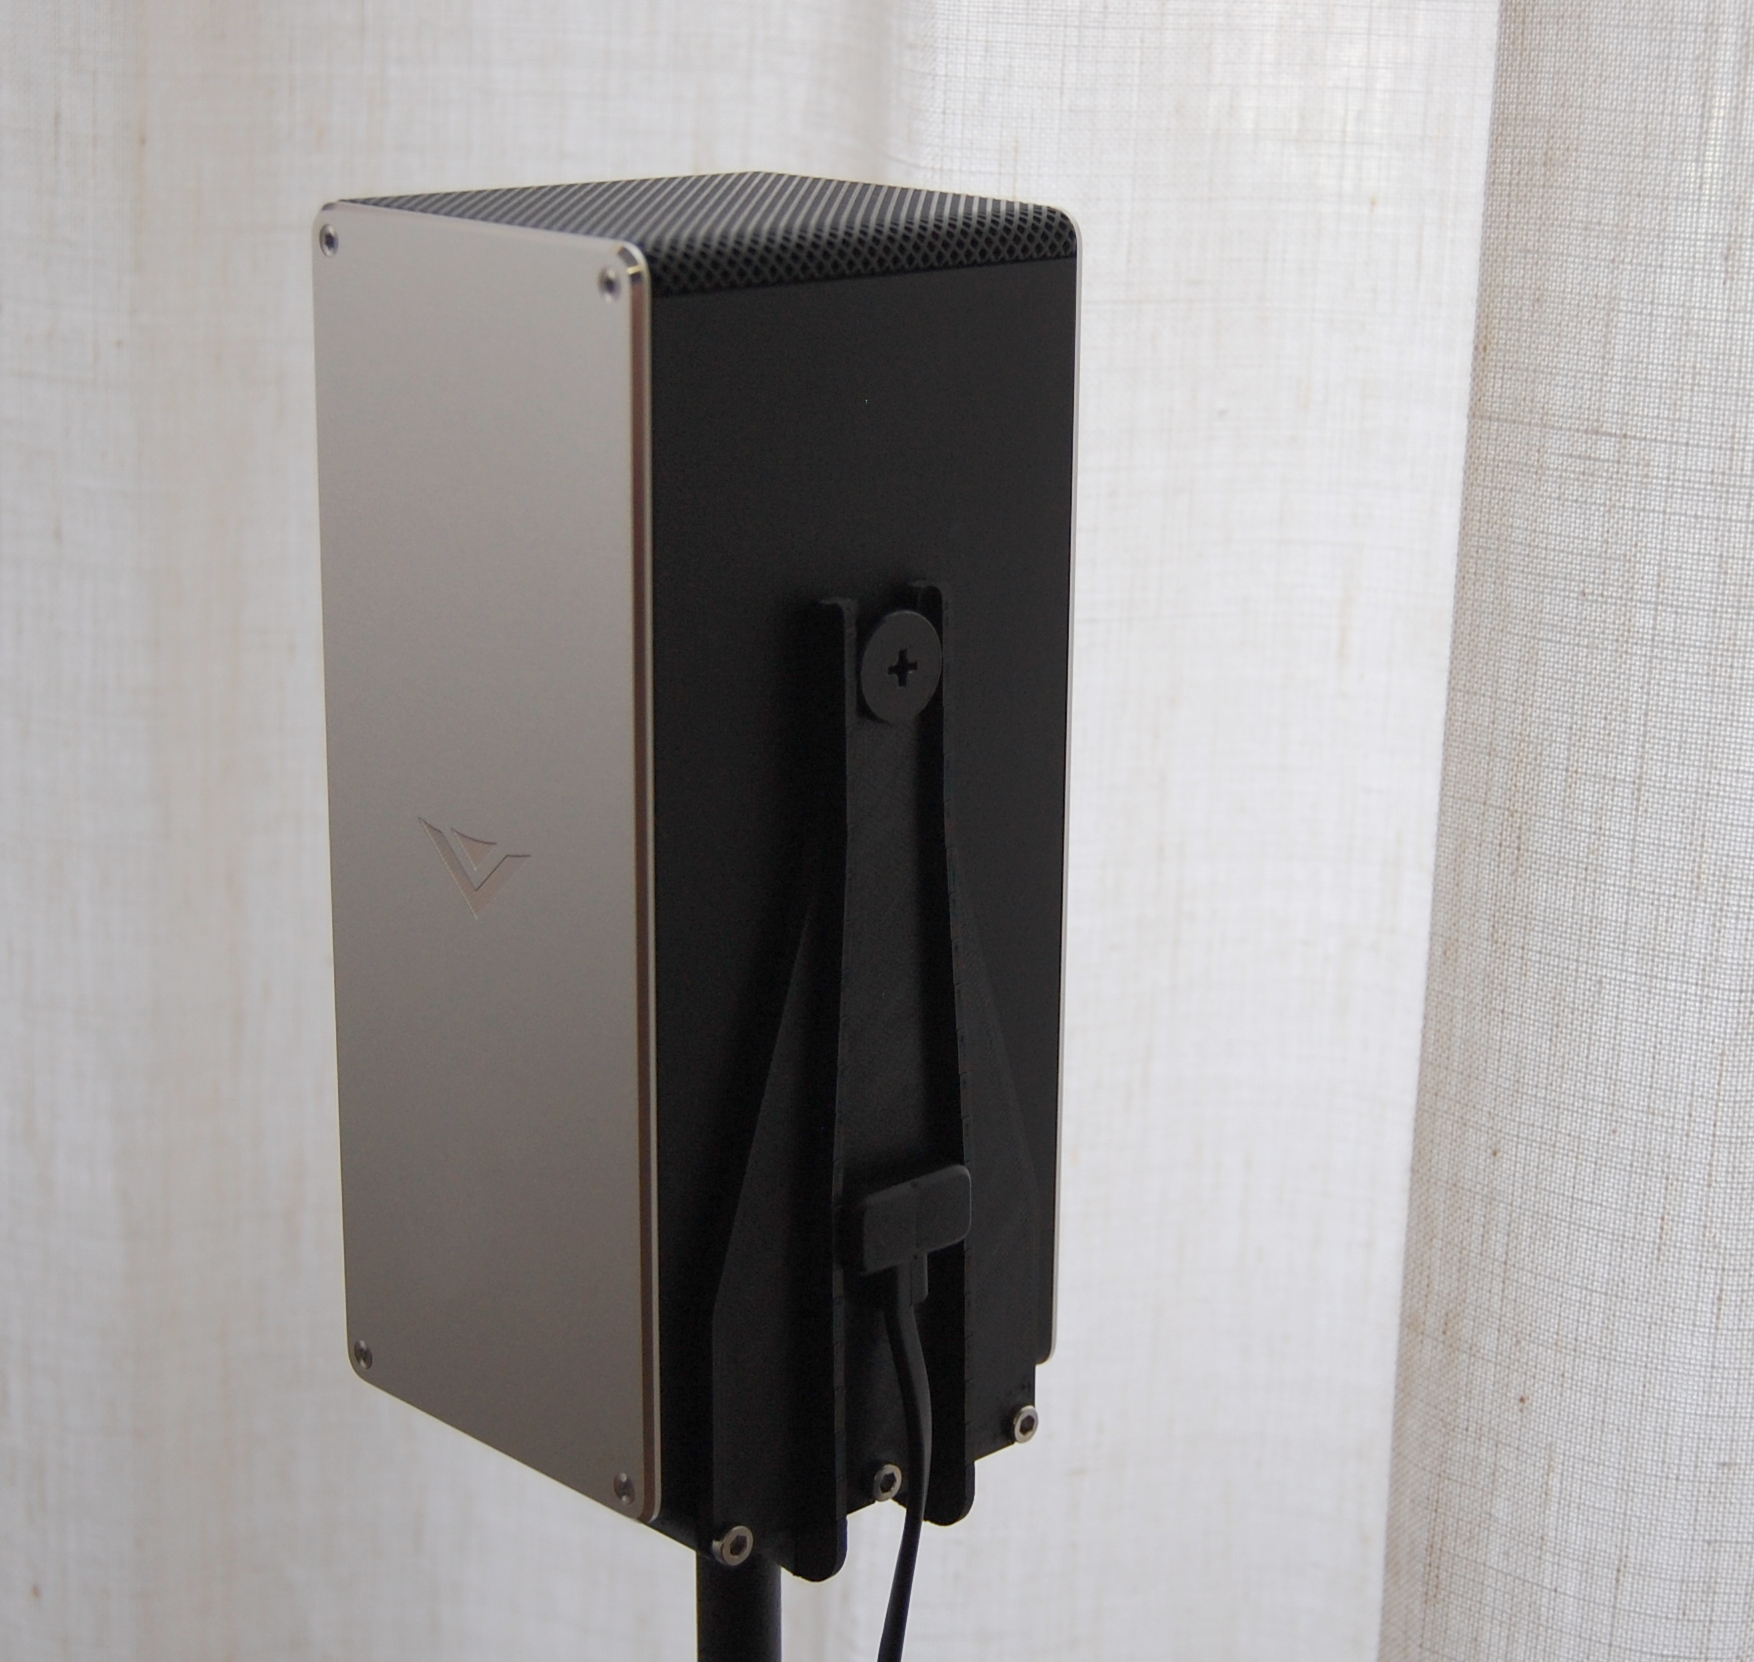 VIZIO SB46514-F6 Rear speaker mount for stand